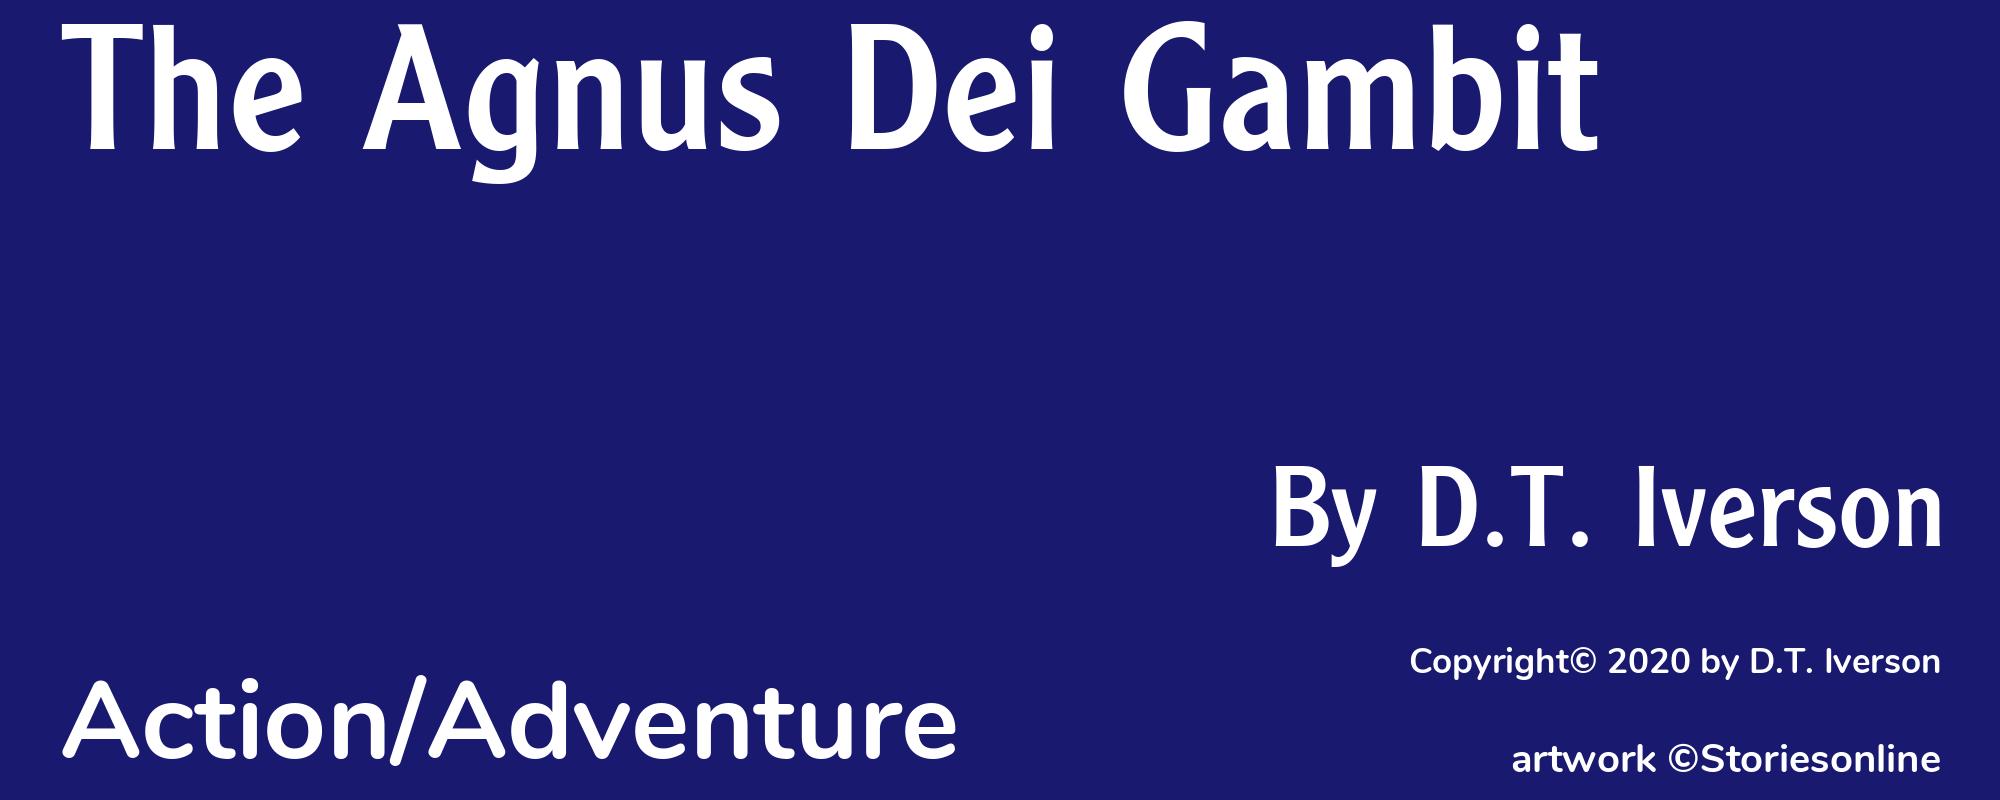 The Agnus Dei Gambit - Cover